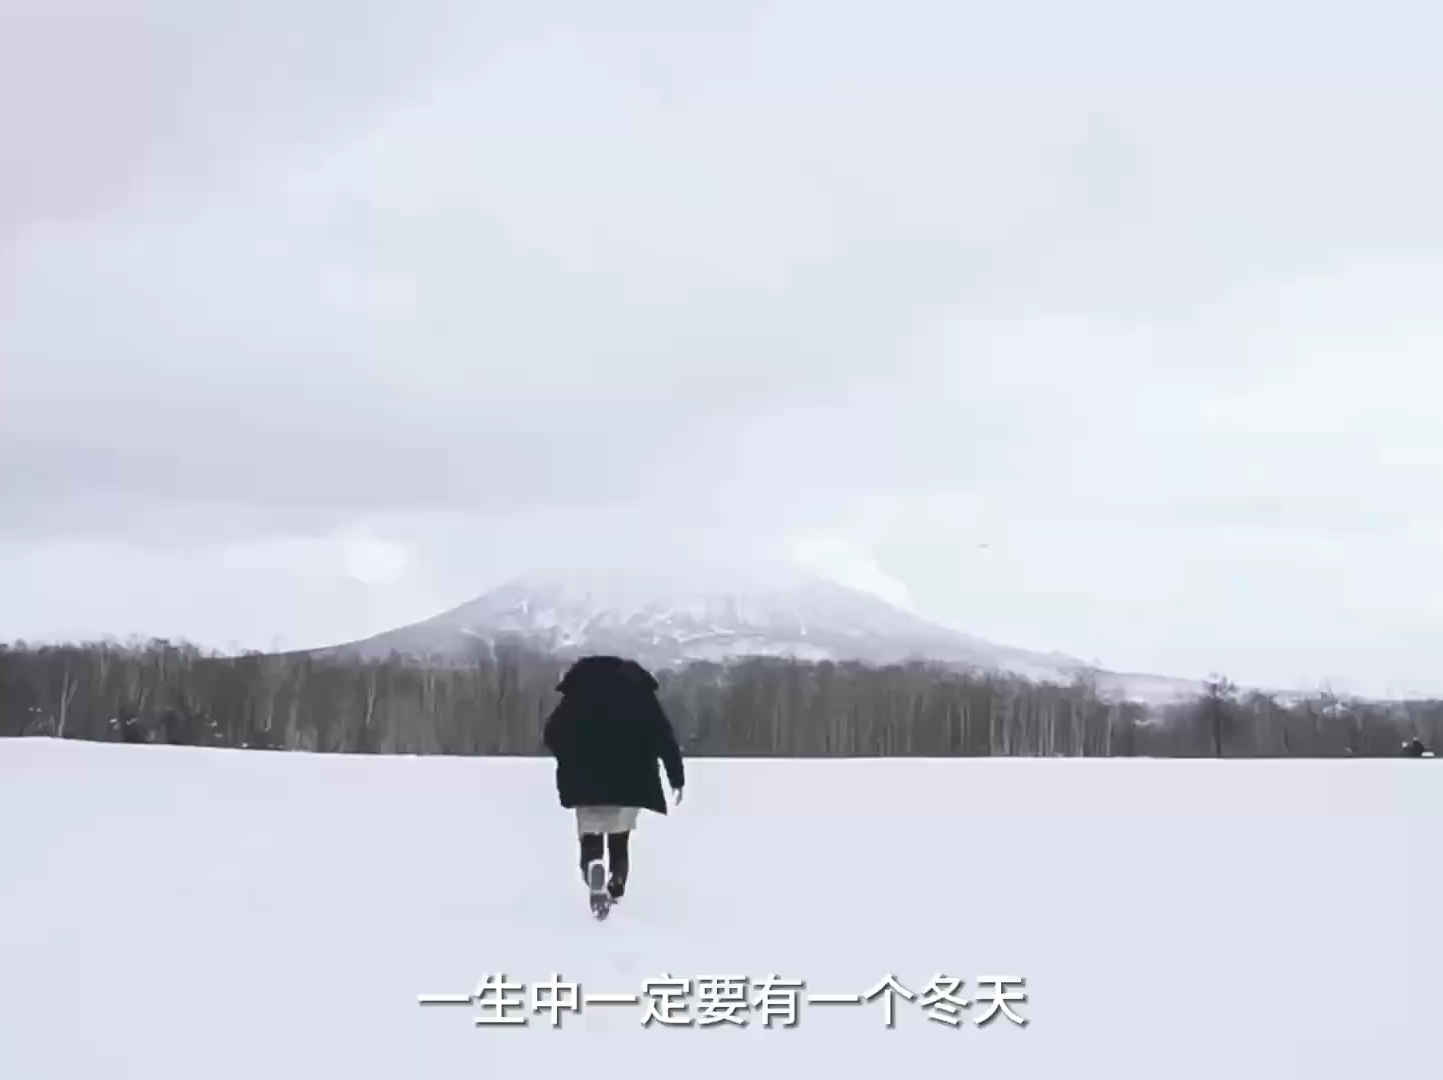 冬天的北海道是多少人心神往之的滑雪胜地